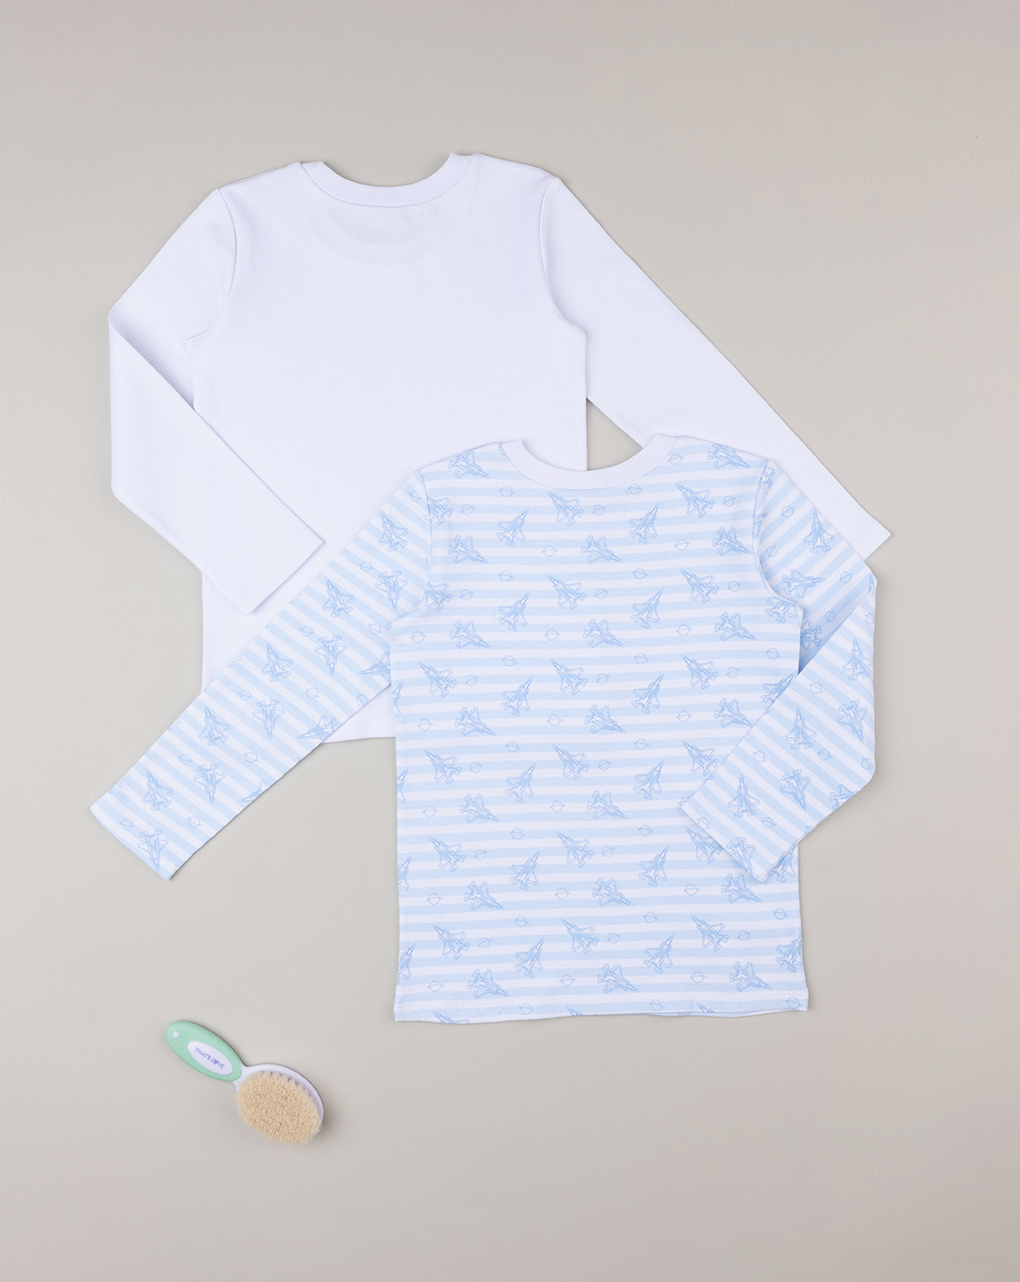 Pack 2 camiseta niño algodón orgánico - Prénatal